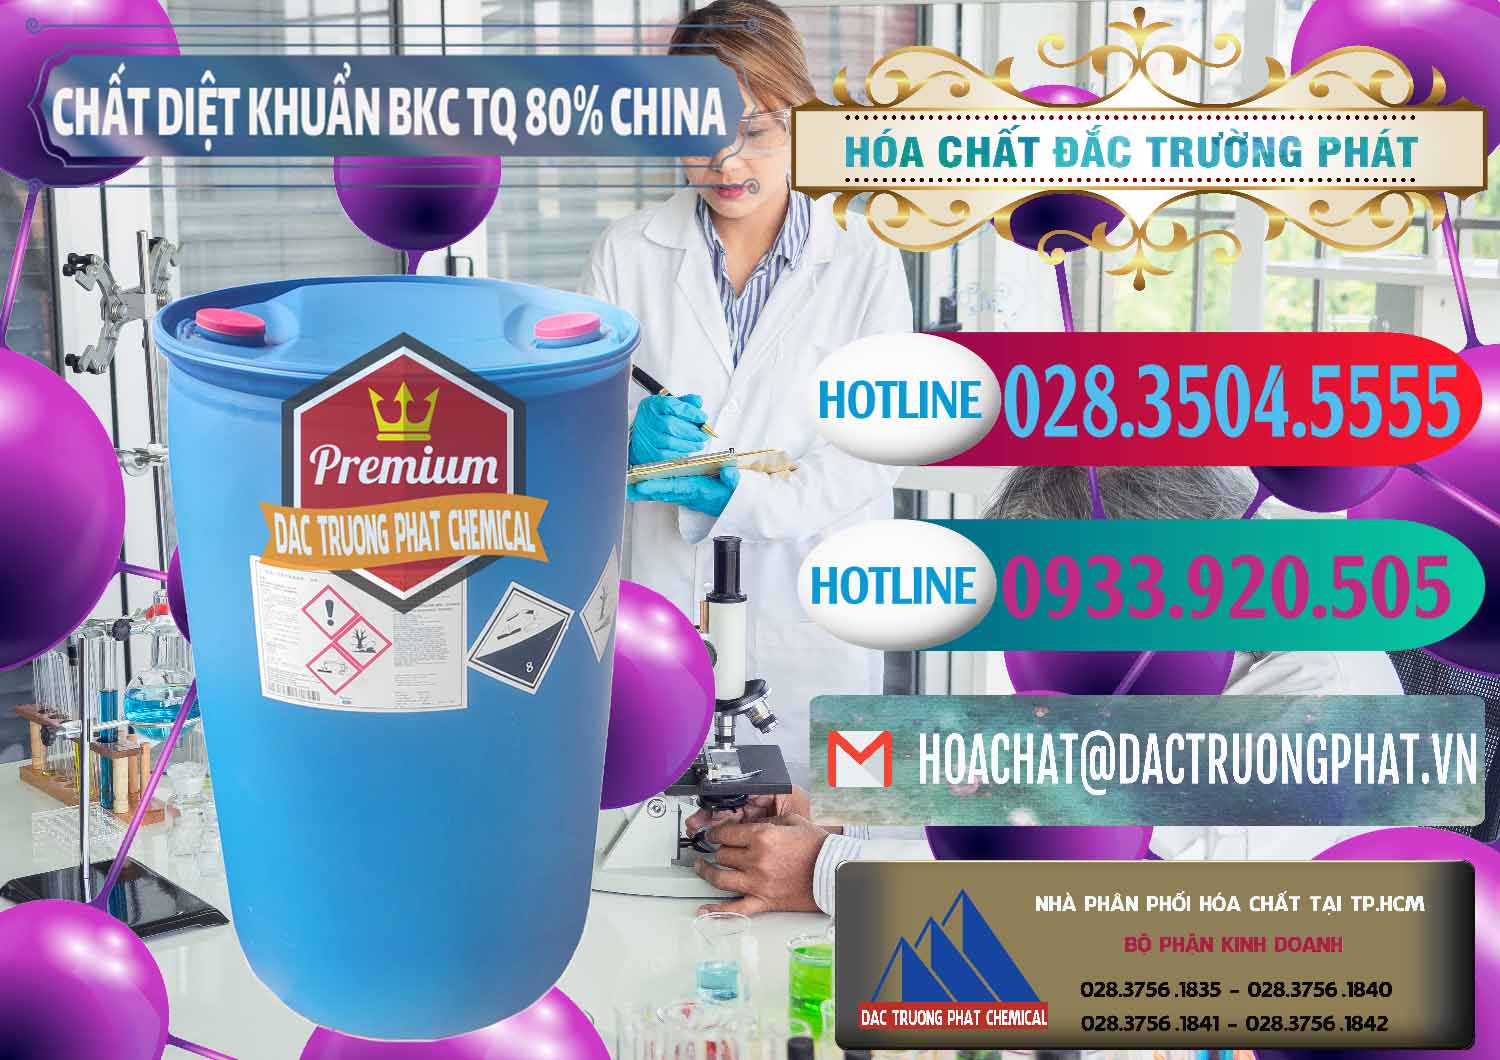 Nơi chuyên bán - cung cấp BKC - Benzalkonium Chloride 80% Trung Quốc China - 0310 - Chuyên nhập khẩu và phân phối hóa chất tại TP.HCM - truongphat.vn